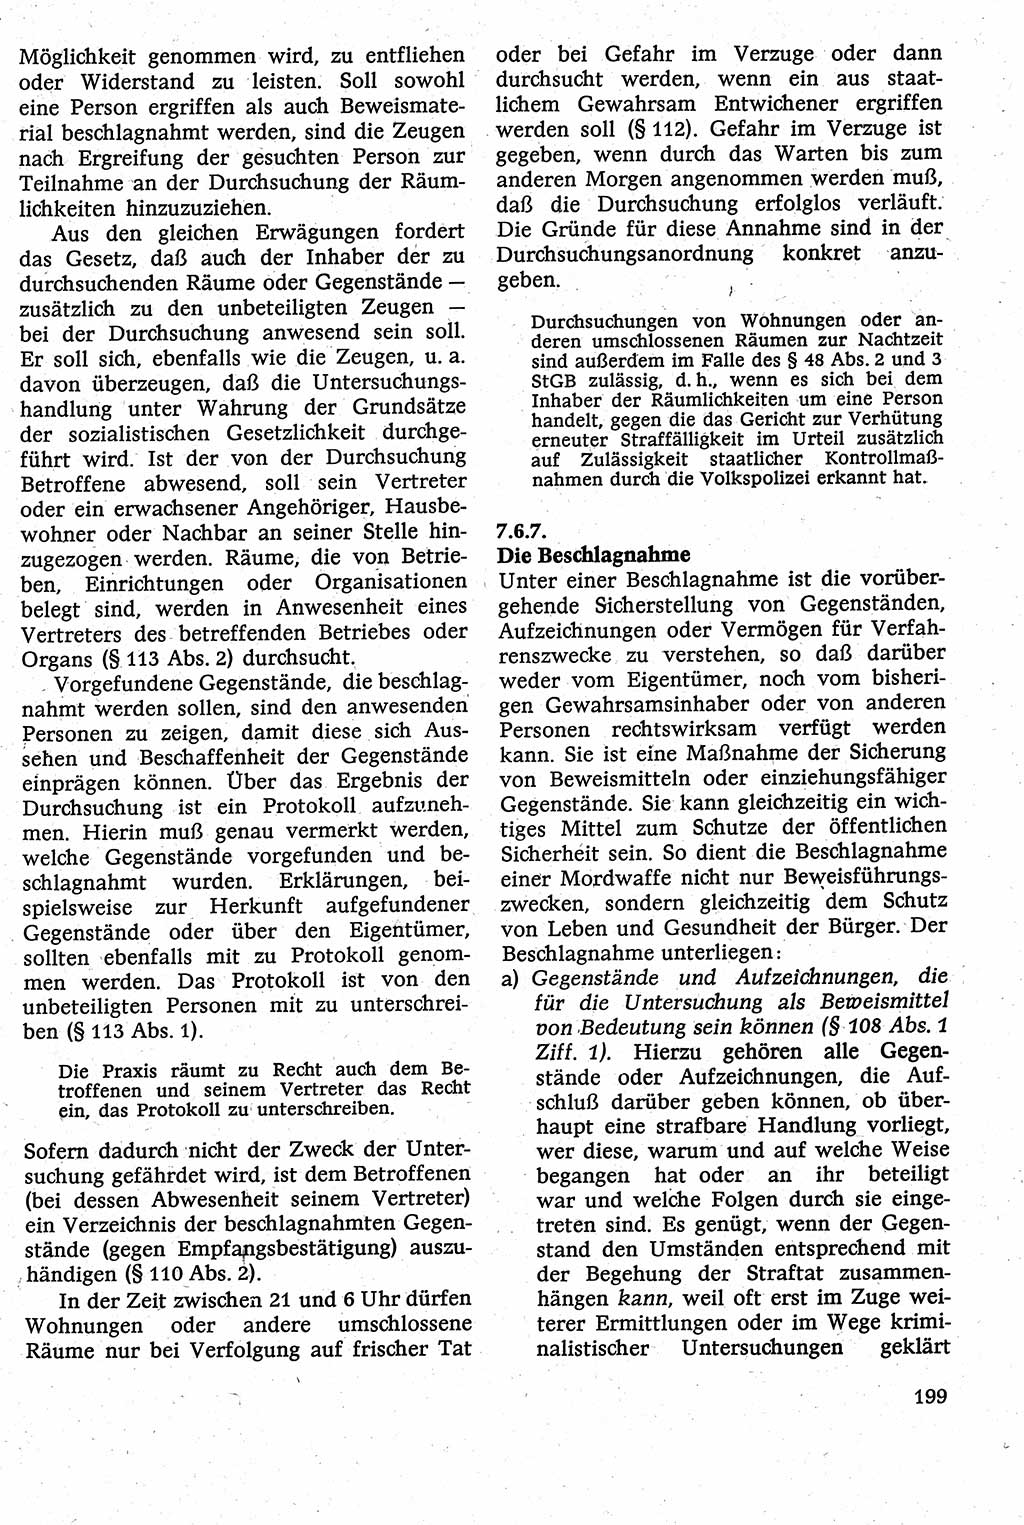 Strafverfahrensrecht [Deutsche Demokratische Republik (DDR)], Lehrbuch 1982, Seite 199 (Strafverf.-R. DDR Lb. 1982, S. 199)